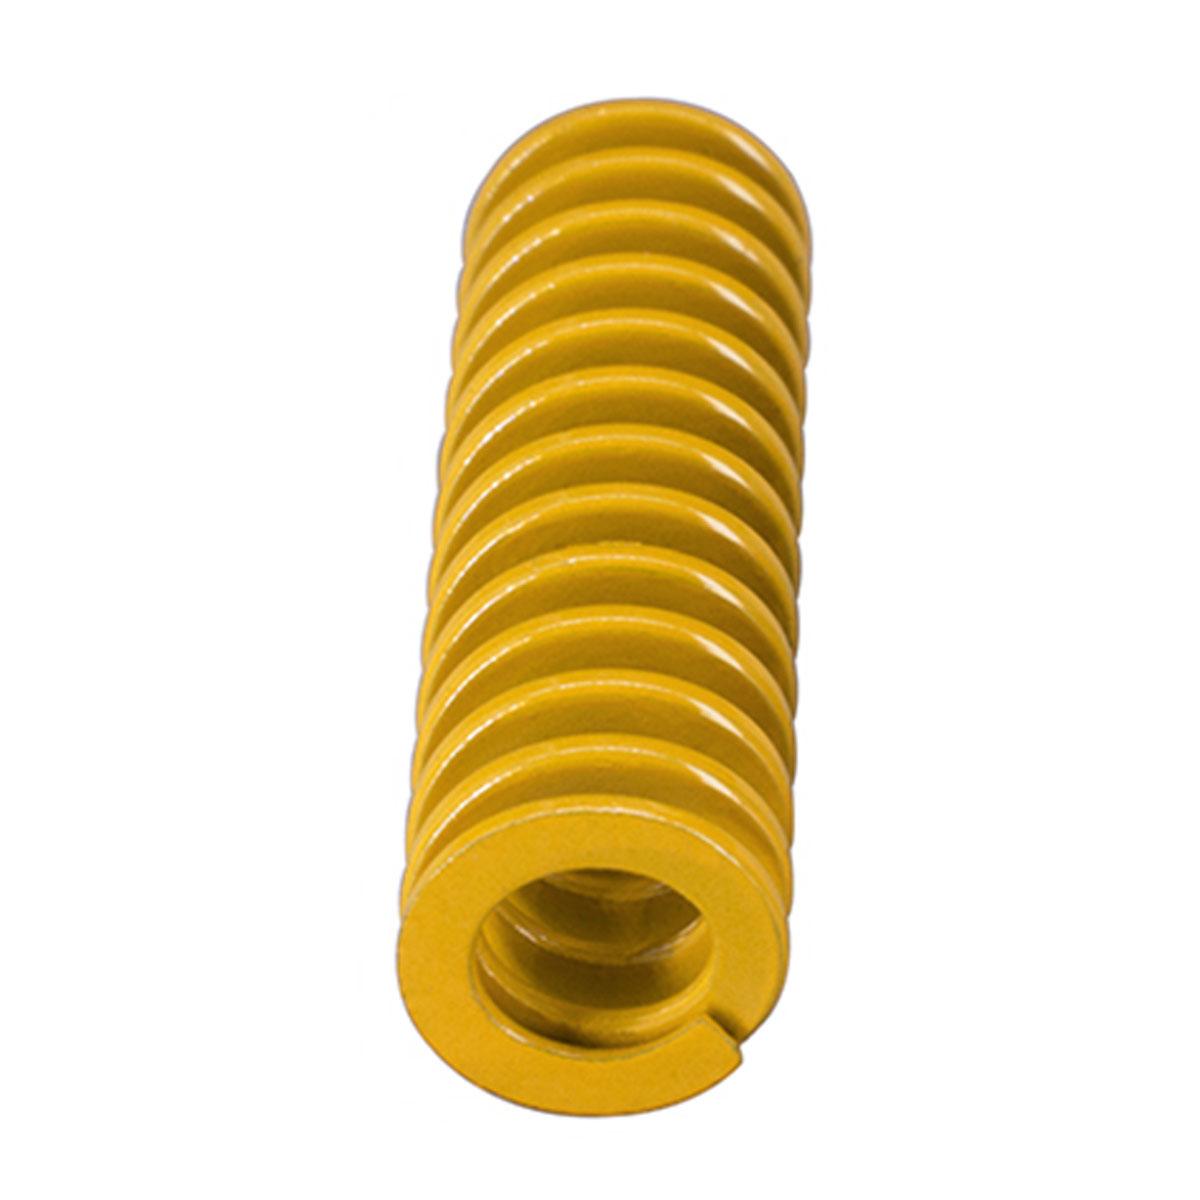 Mola Amarela para Impressora 3D 20mm x 8mm - 1 Unidade